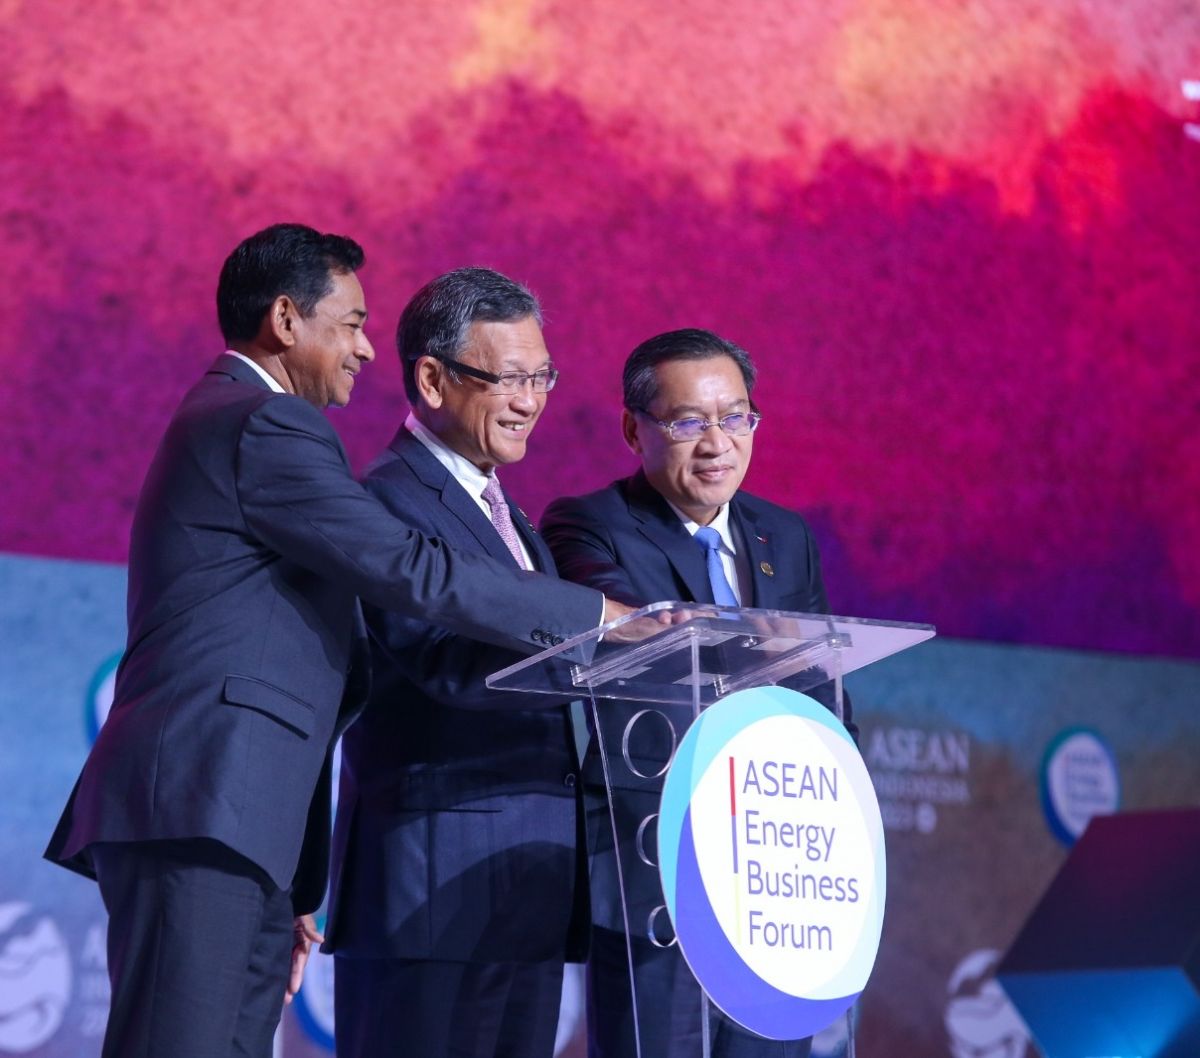 Acara ini mendukung Indonesia Visi kepemimpina menjadikan ASEAN sebagai pusat perekonomian regional dan global, sehingga membuka jalan bagi pertumbuhan dan pembangunan berkelanjutan.